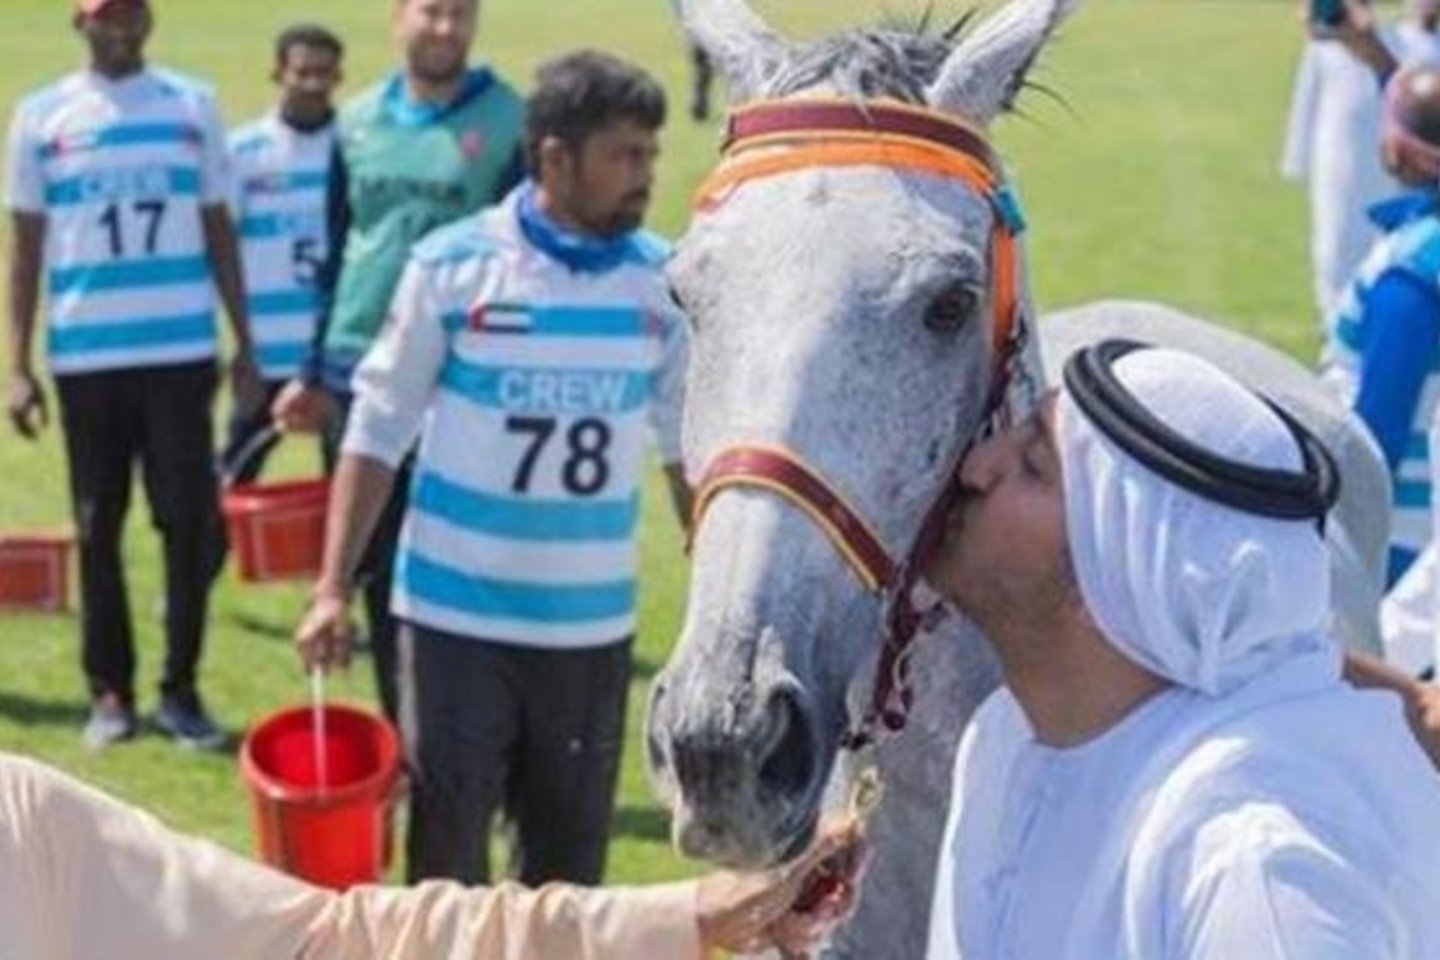 Jungtinių Arabų Emiratų šeichas Abdulas Azizas Bin Faisalis Al Qasimi sulaukė griežčiausios sankcijos už žiaurų elgesį su žirgu per visą Tarptautinės žirginio sporto federacijos (FEI) istoriją. <br> instagram.com